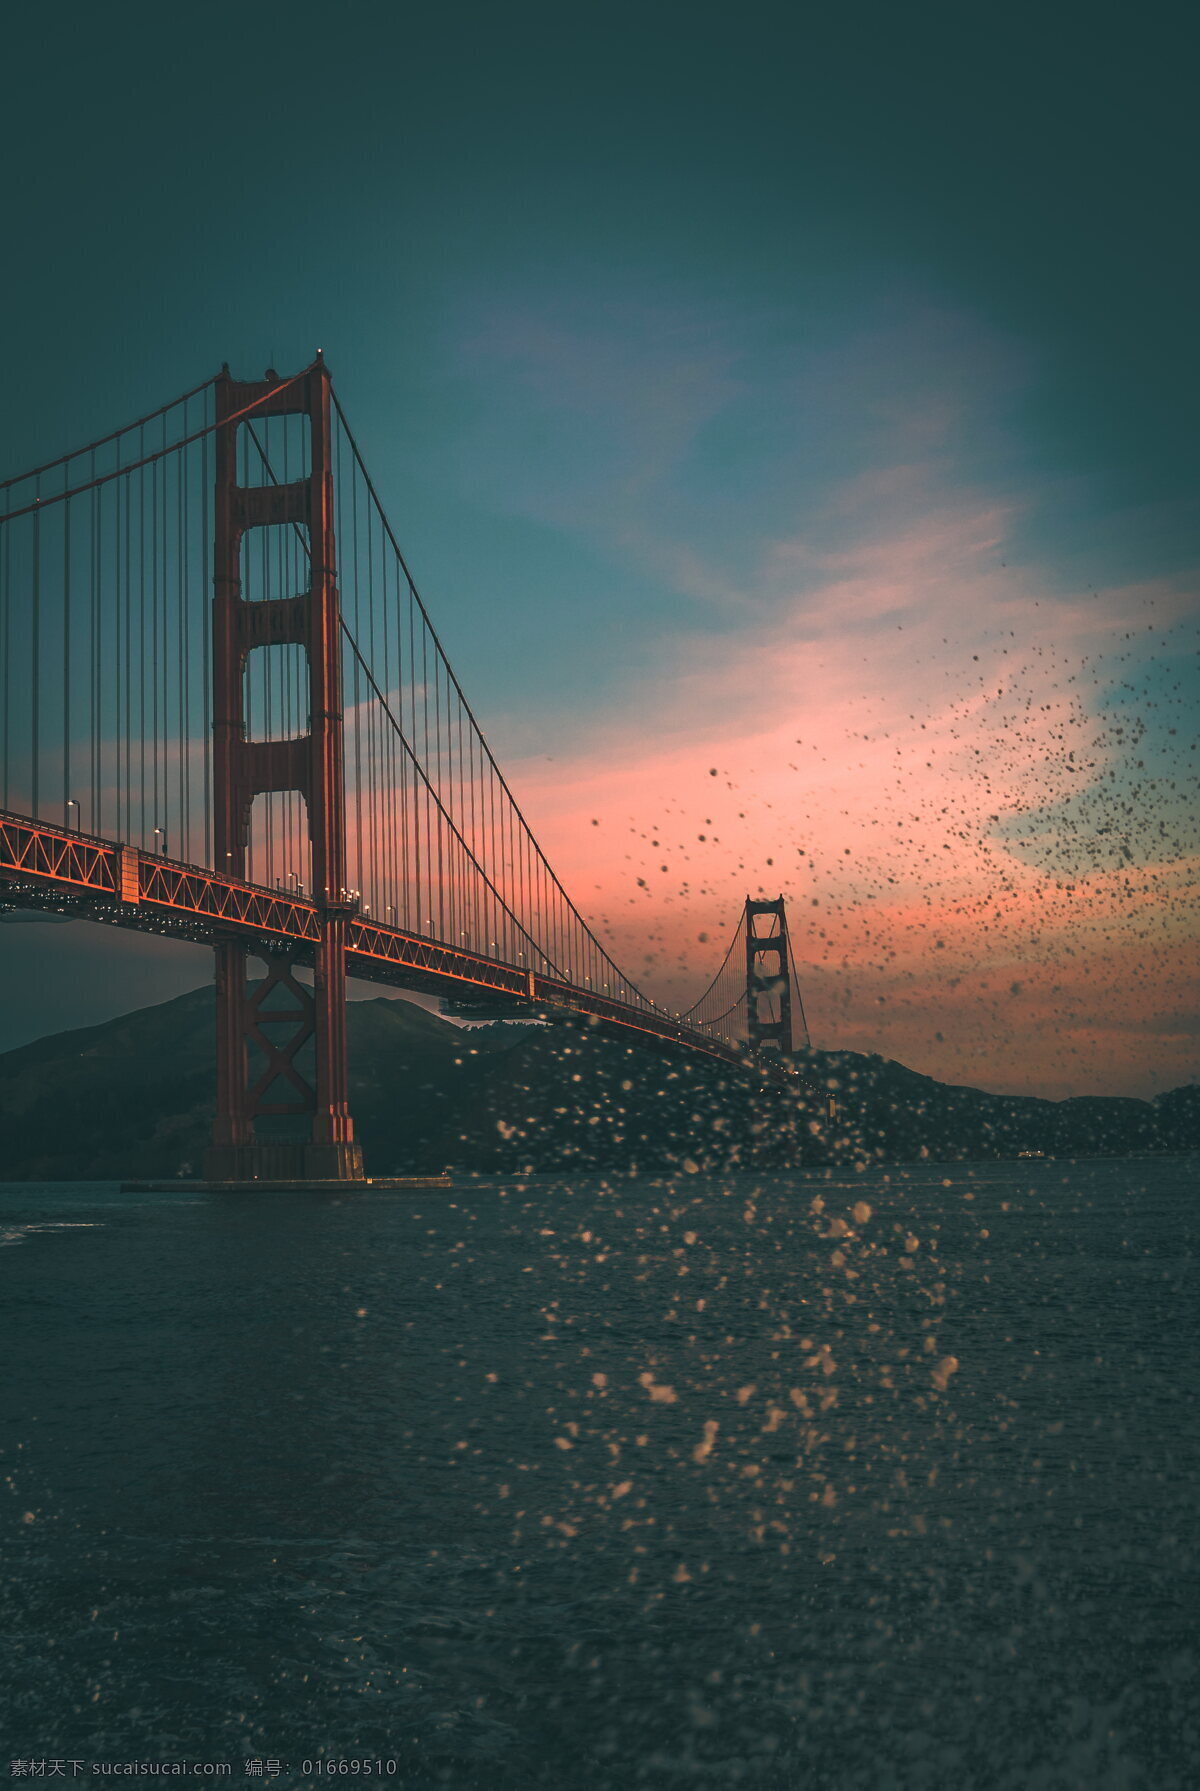 唯美 旧金山 大桥 旧金山大桥 美国 夕阳 火烧云 余晖 黄昏 黄昏大桥 跨海大桥 唯美大桥 桥 桥建筑 大桥风景 唯美风景 自然风景 海景 风景 风光 美国风光 美国风景 自然景观 建筑景观